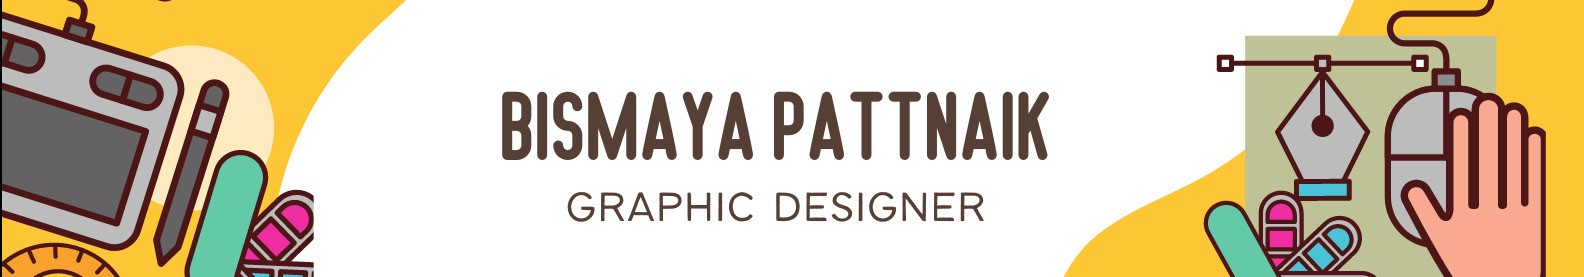 BISMAYA PATTNAIK's profile banner